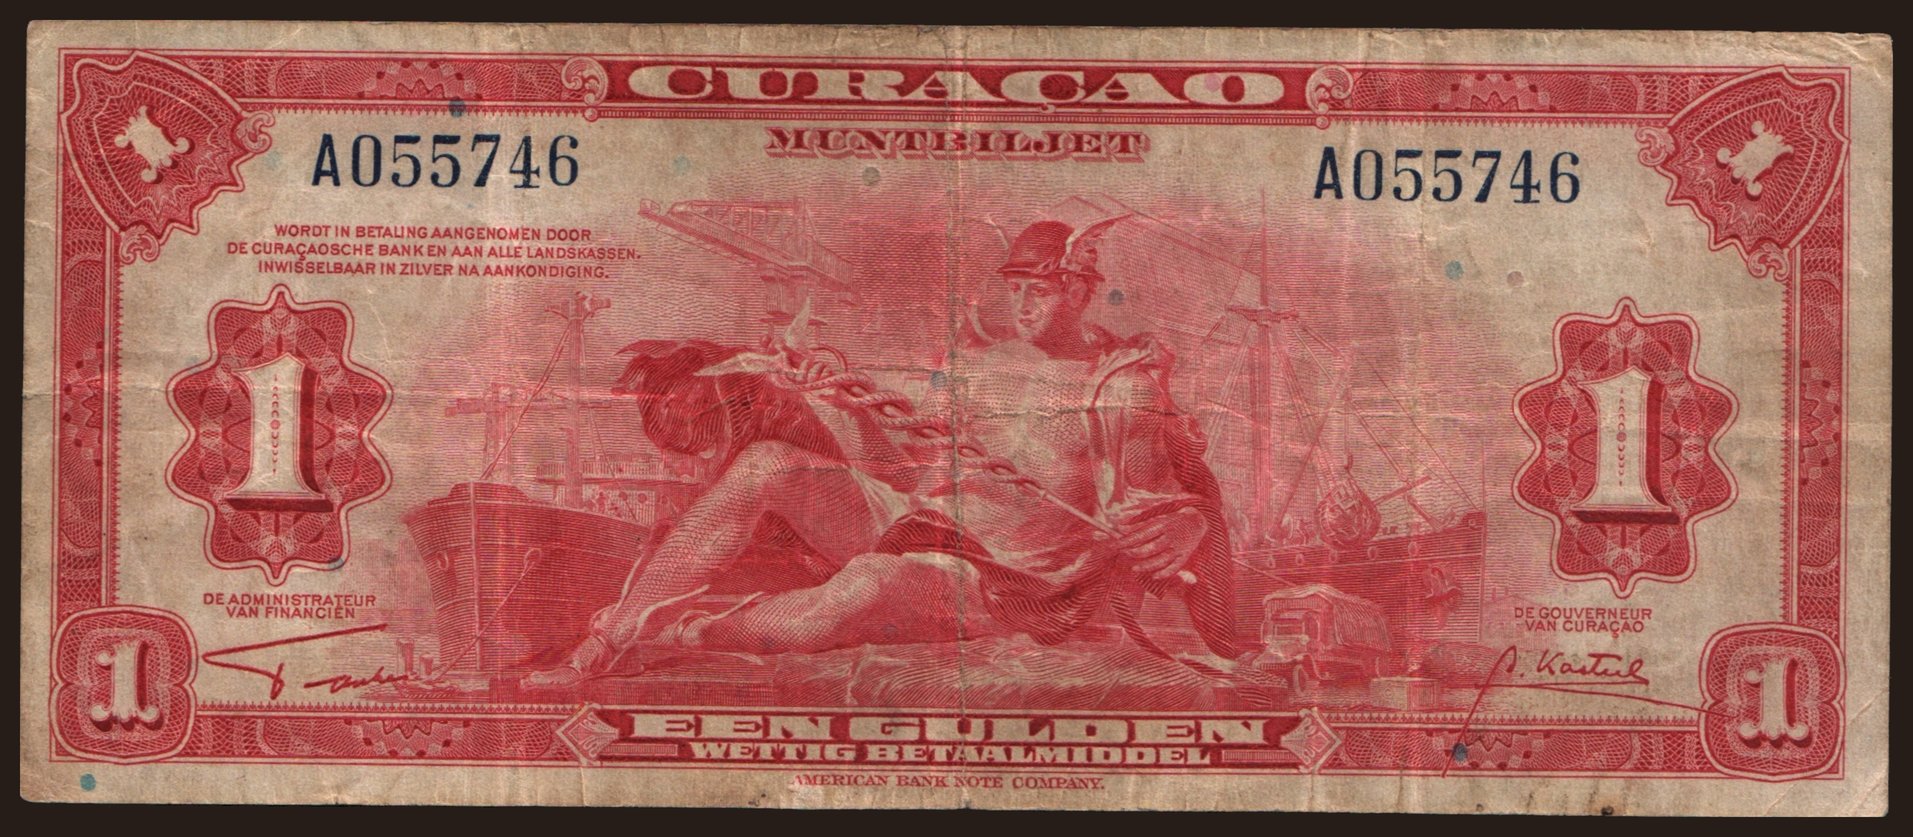 1 gulden, 1942